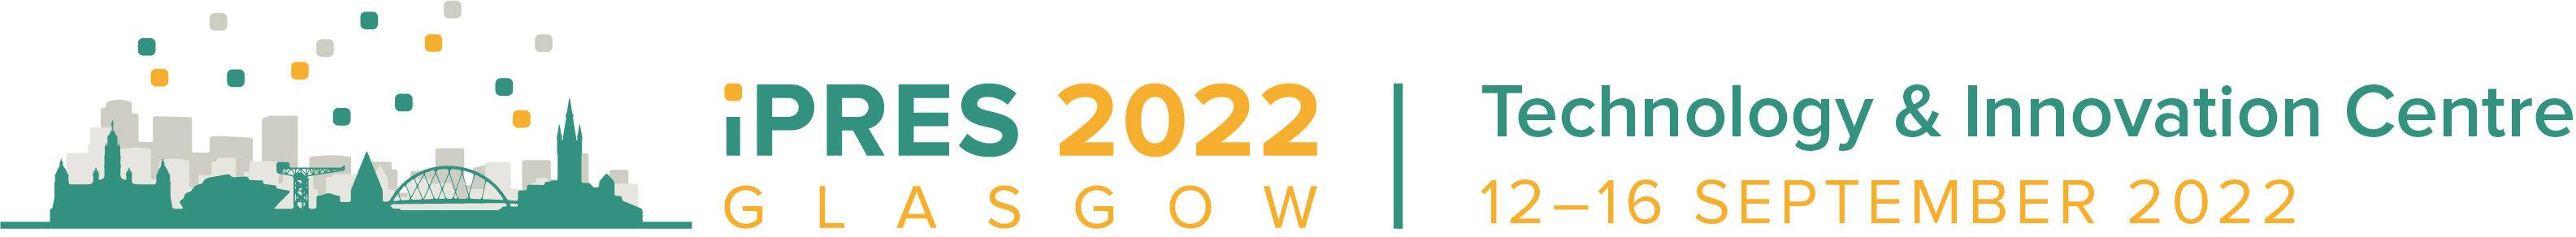 iPRES 2022 Primary Logo 06